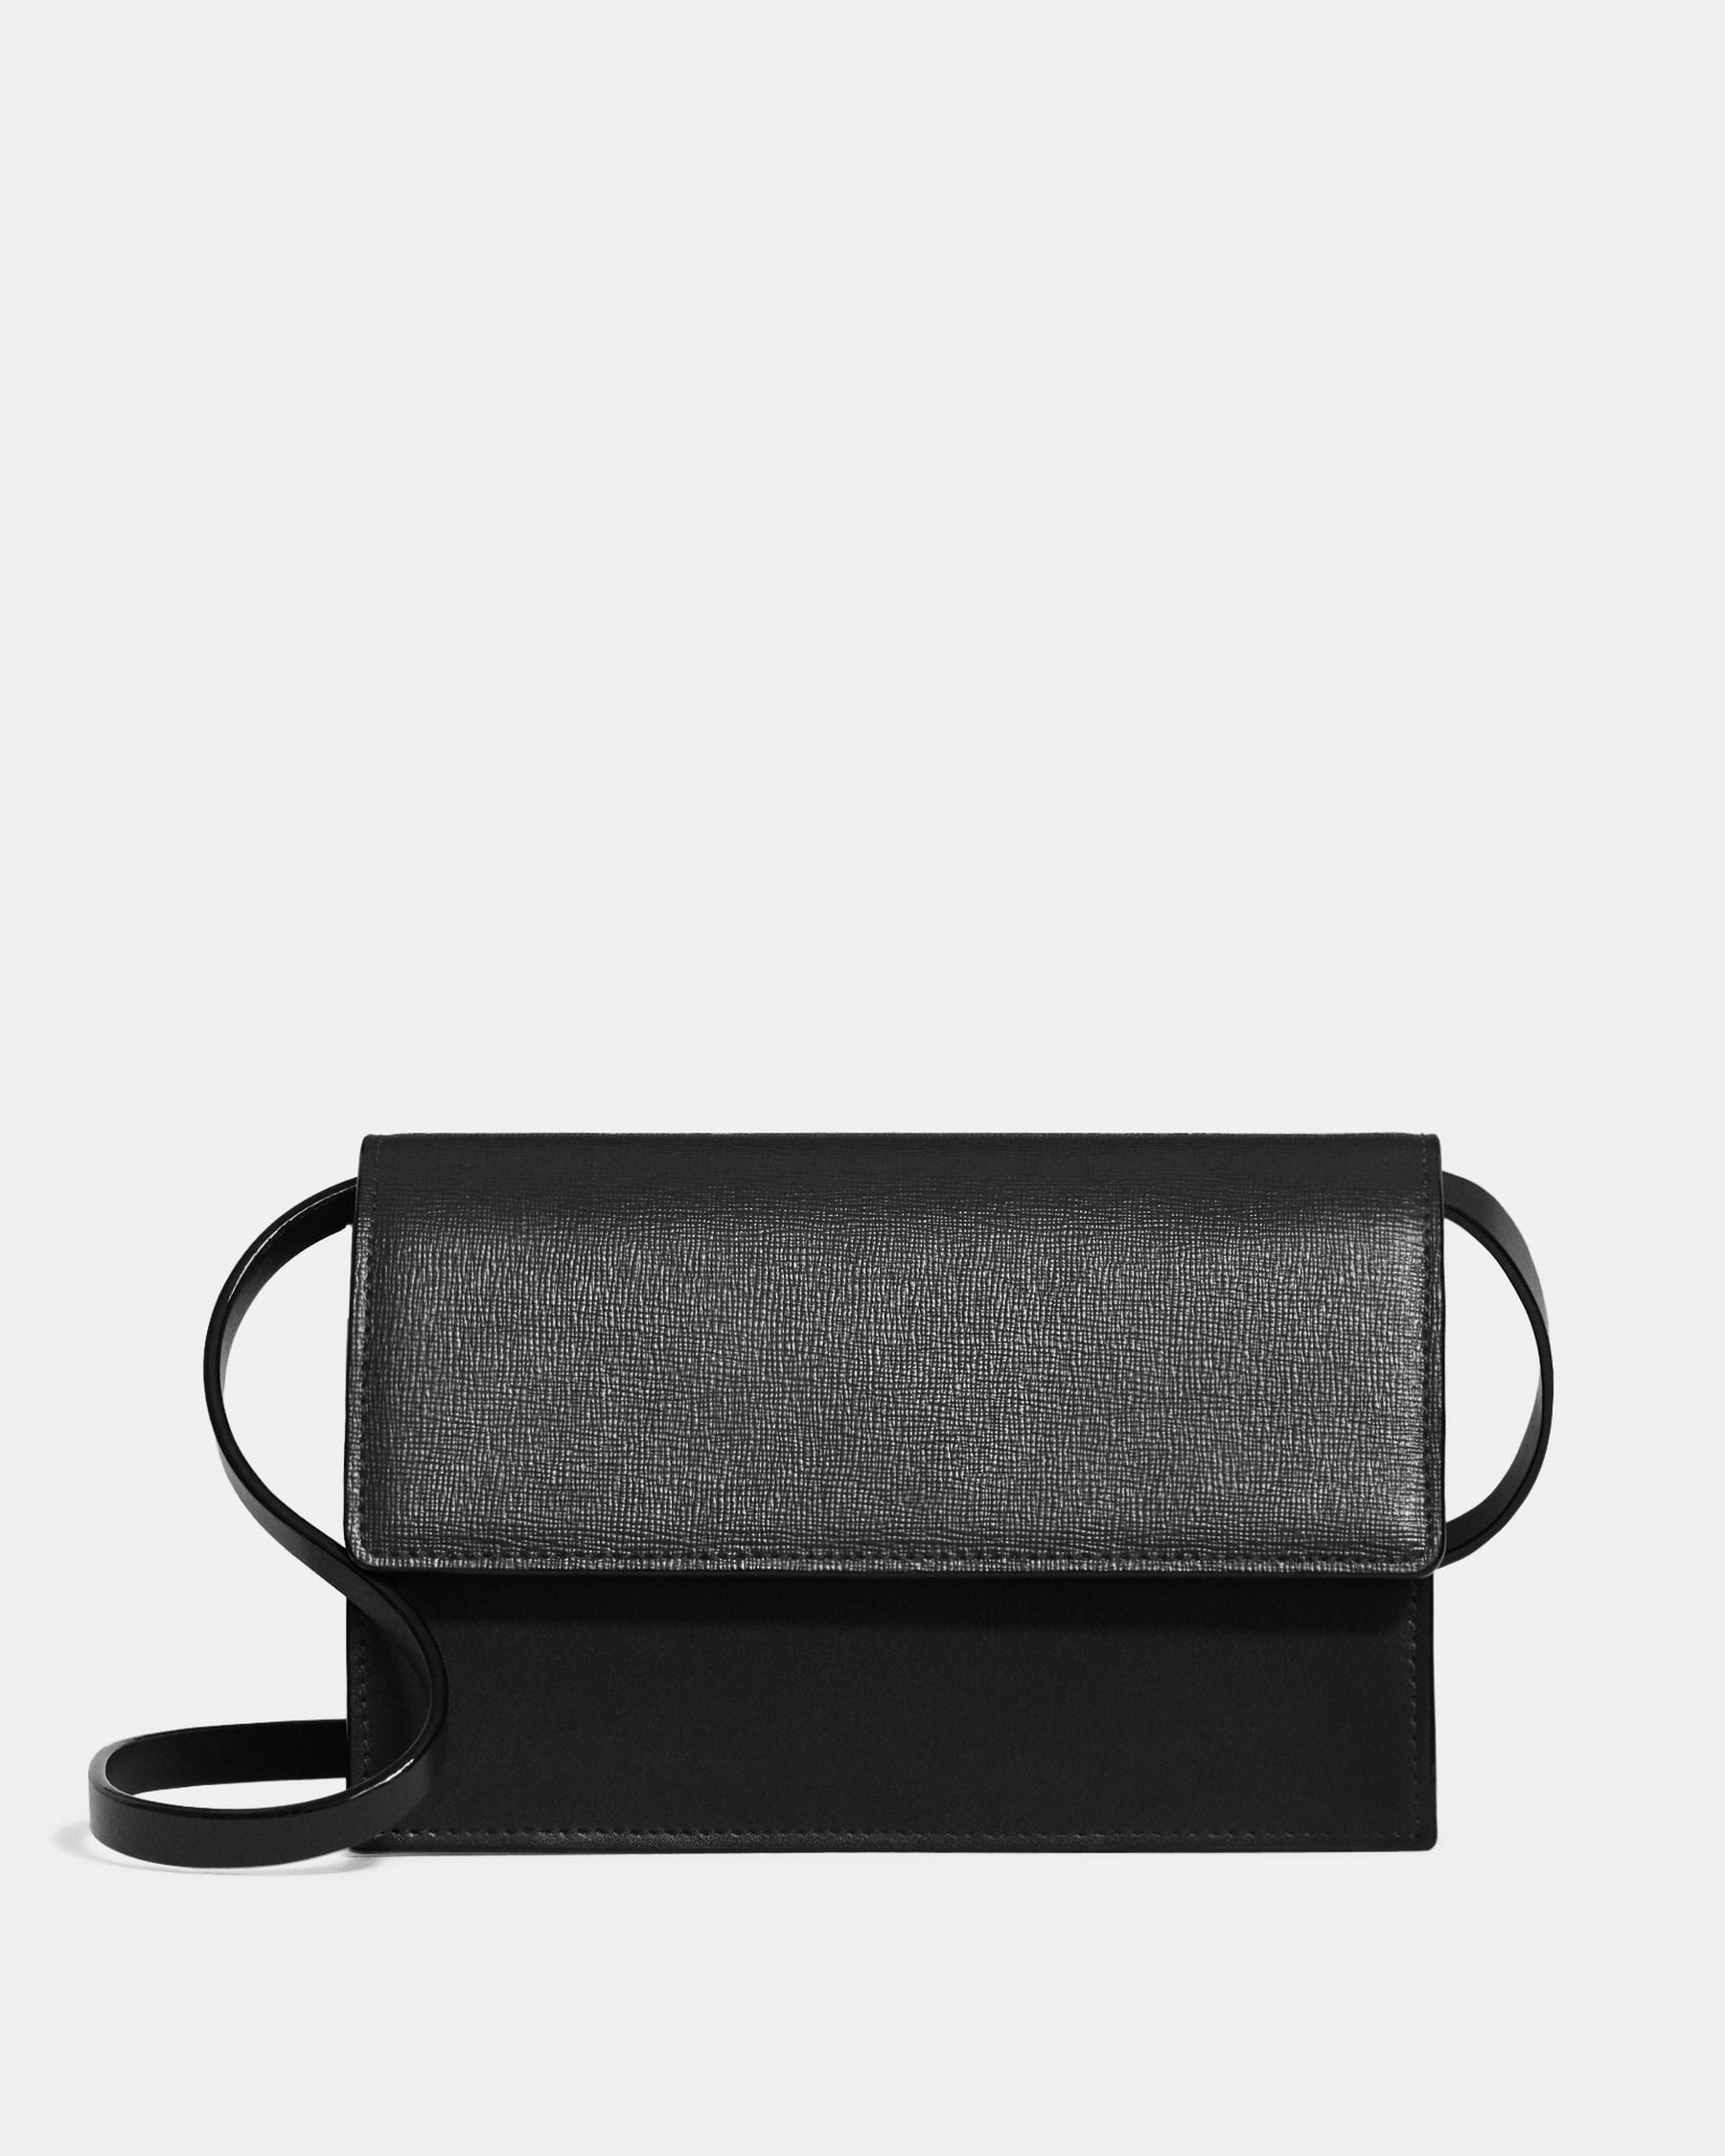 띠어리 Theory Shoulder Box Bag in Leather,BLACK